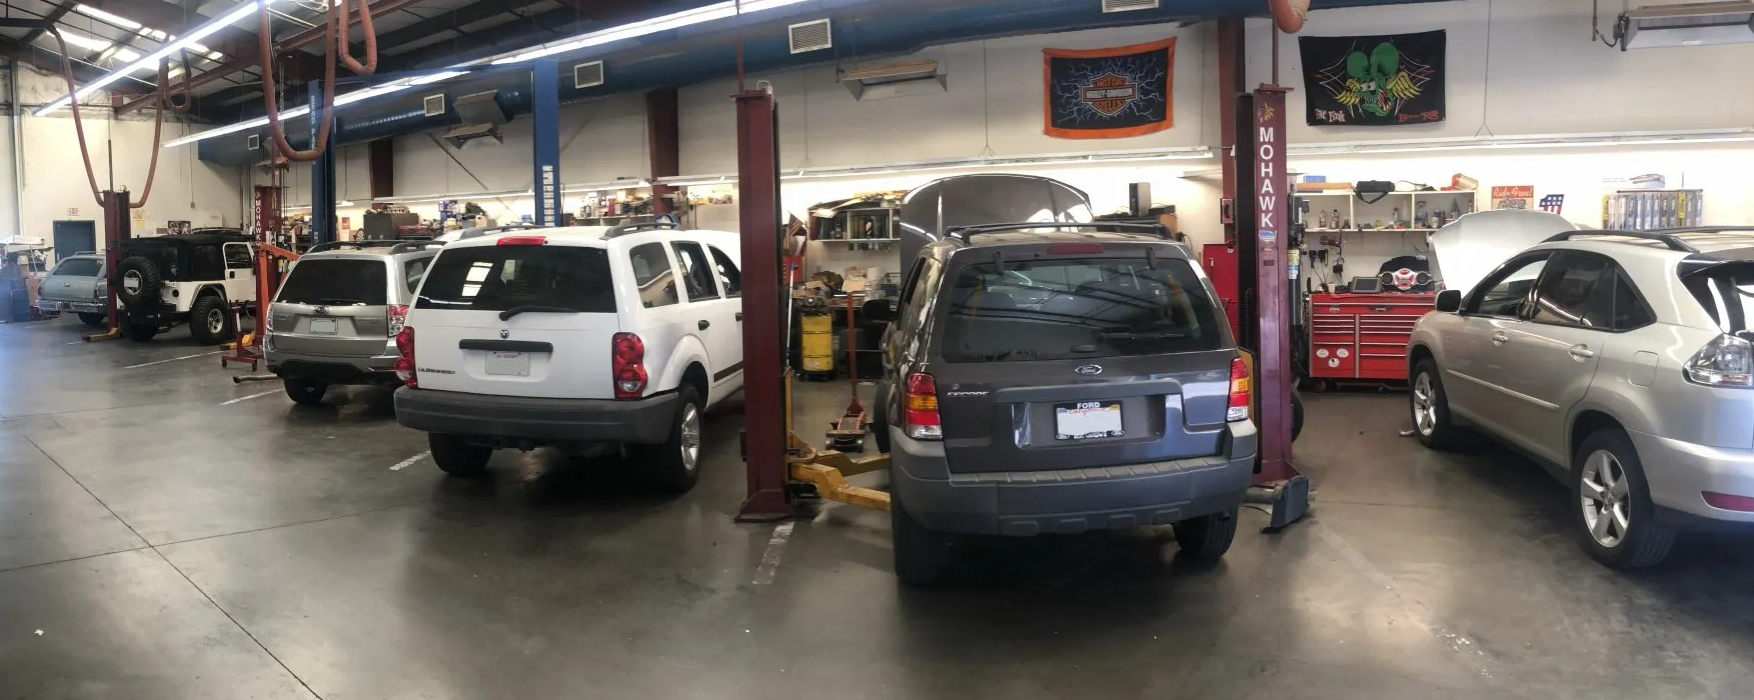 #1 Davis California Auto Repair Shop